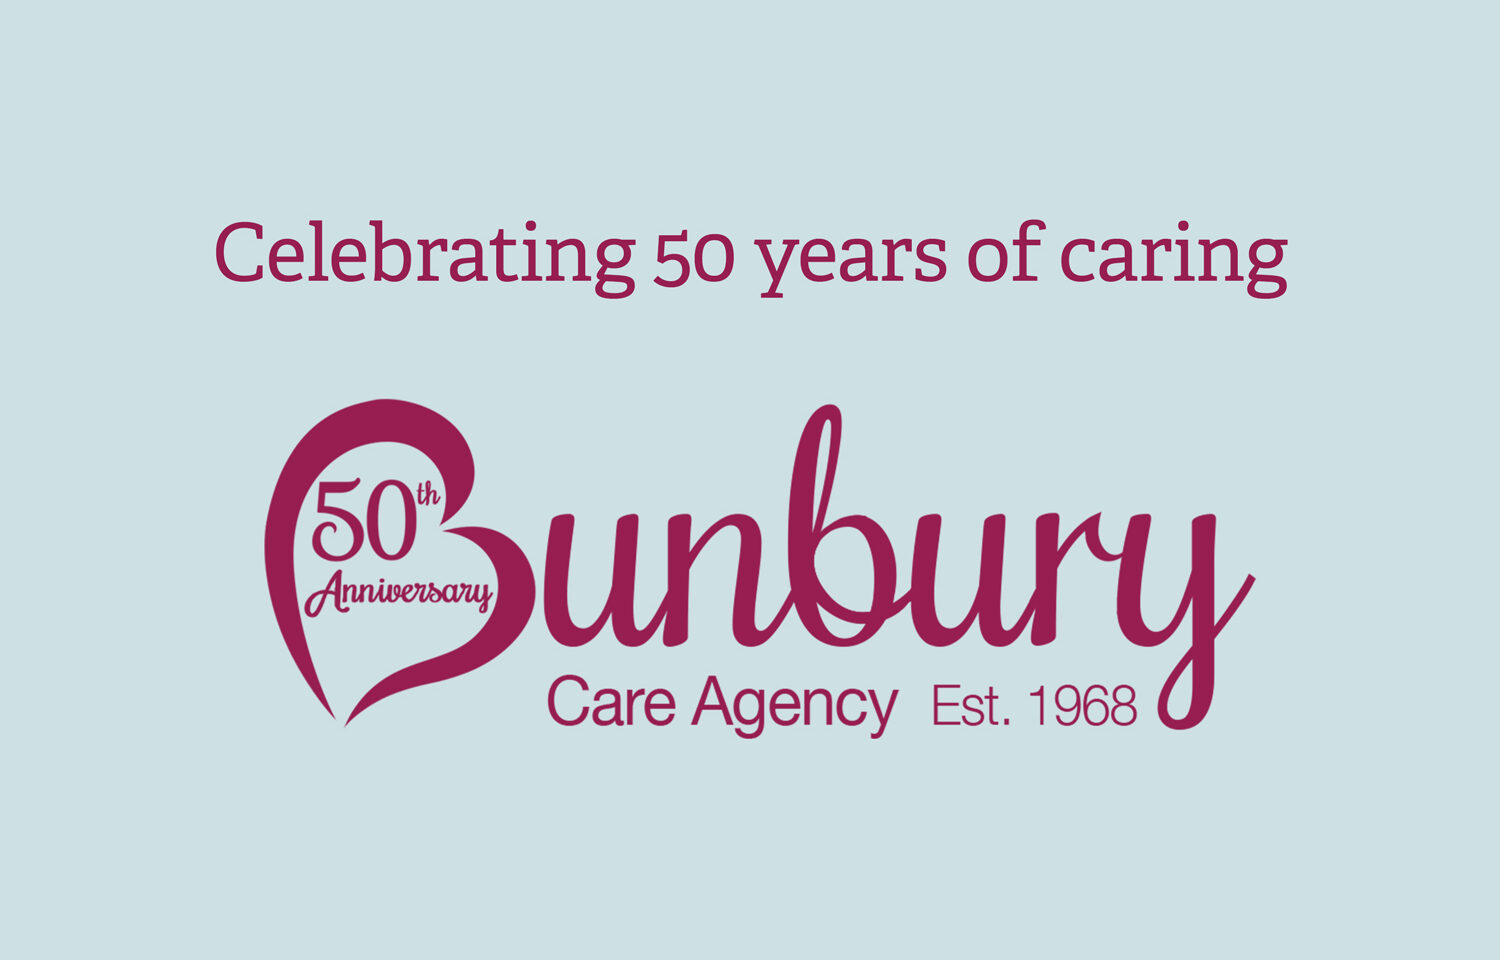 Celebrating 50 years of caring - Bunbury Care Agency